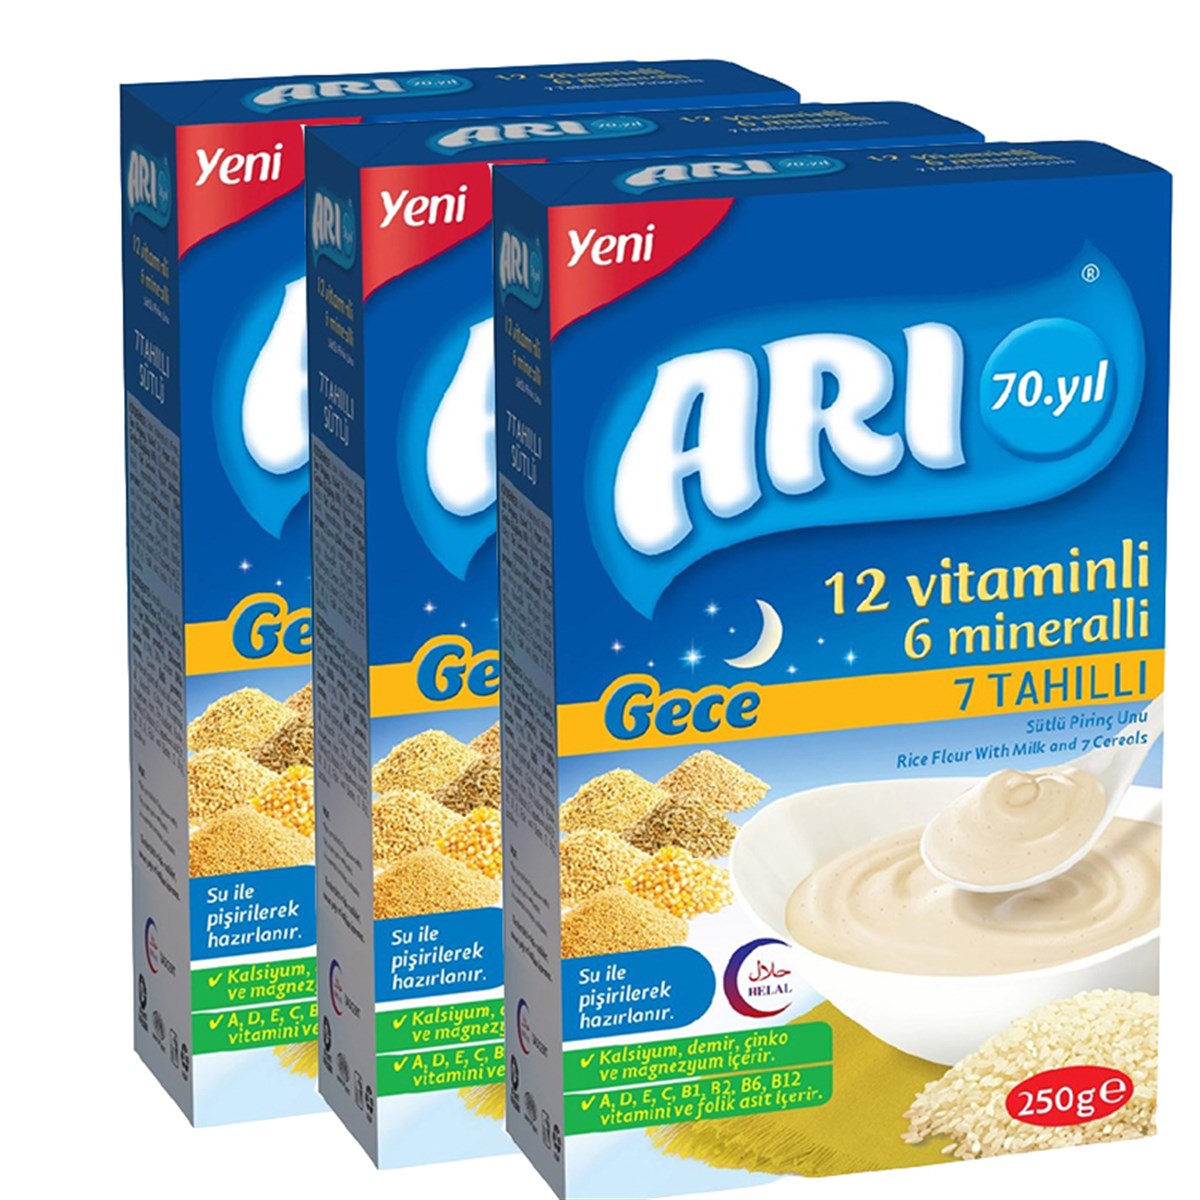 Arı 12 Vitaminlı 6 Mineralli Gece 7 Tahıllı Sütlü Pirinç Unu Bebek Maması  250 gr 3 Lü Paket